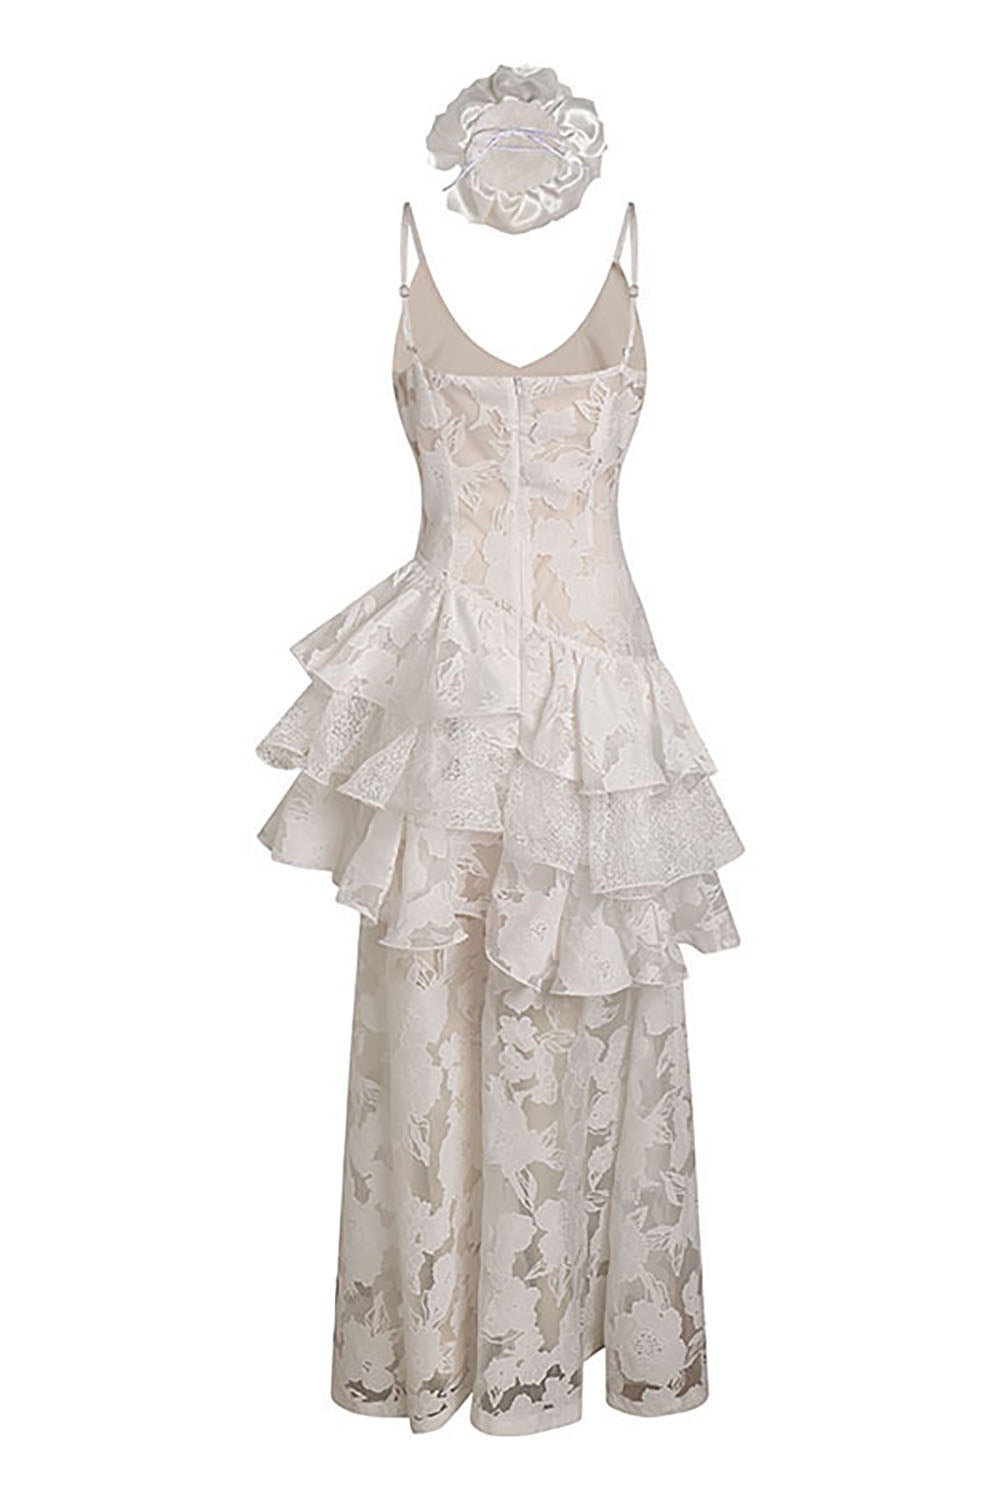 Robe de mariée silhouettes d'inspiration vintage florale à volants et dentelle